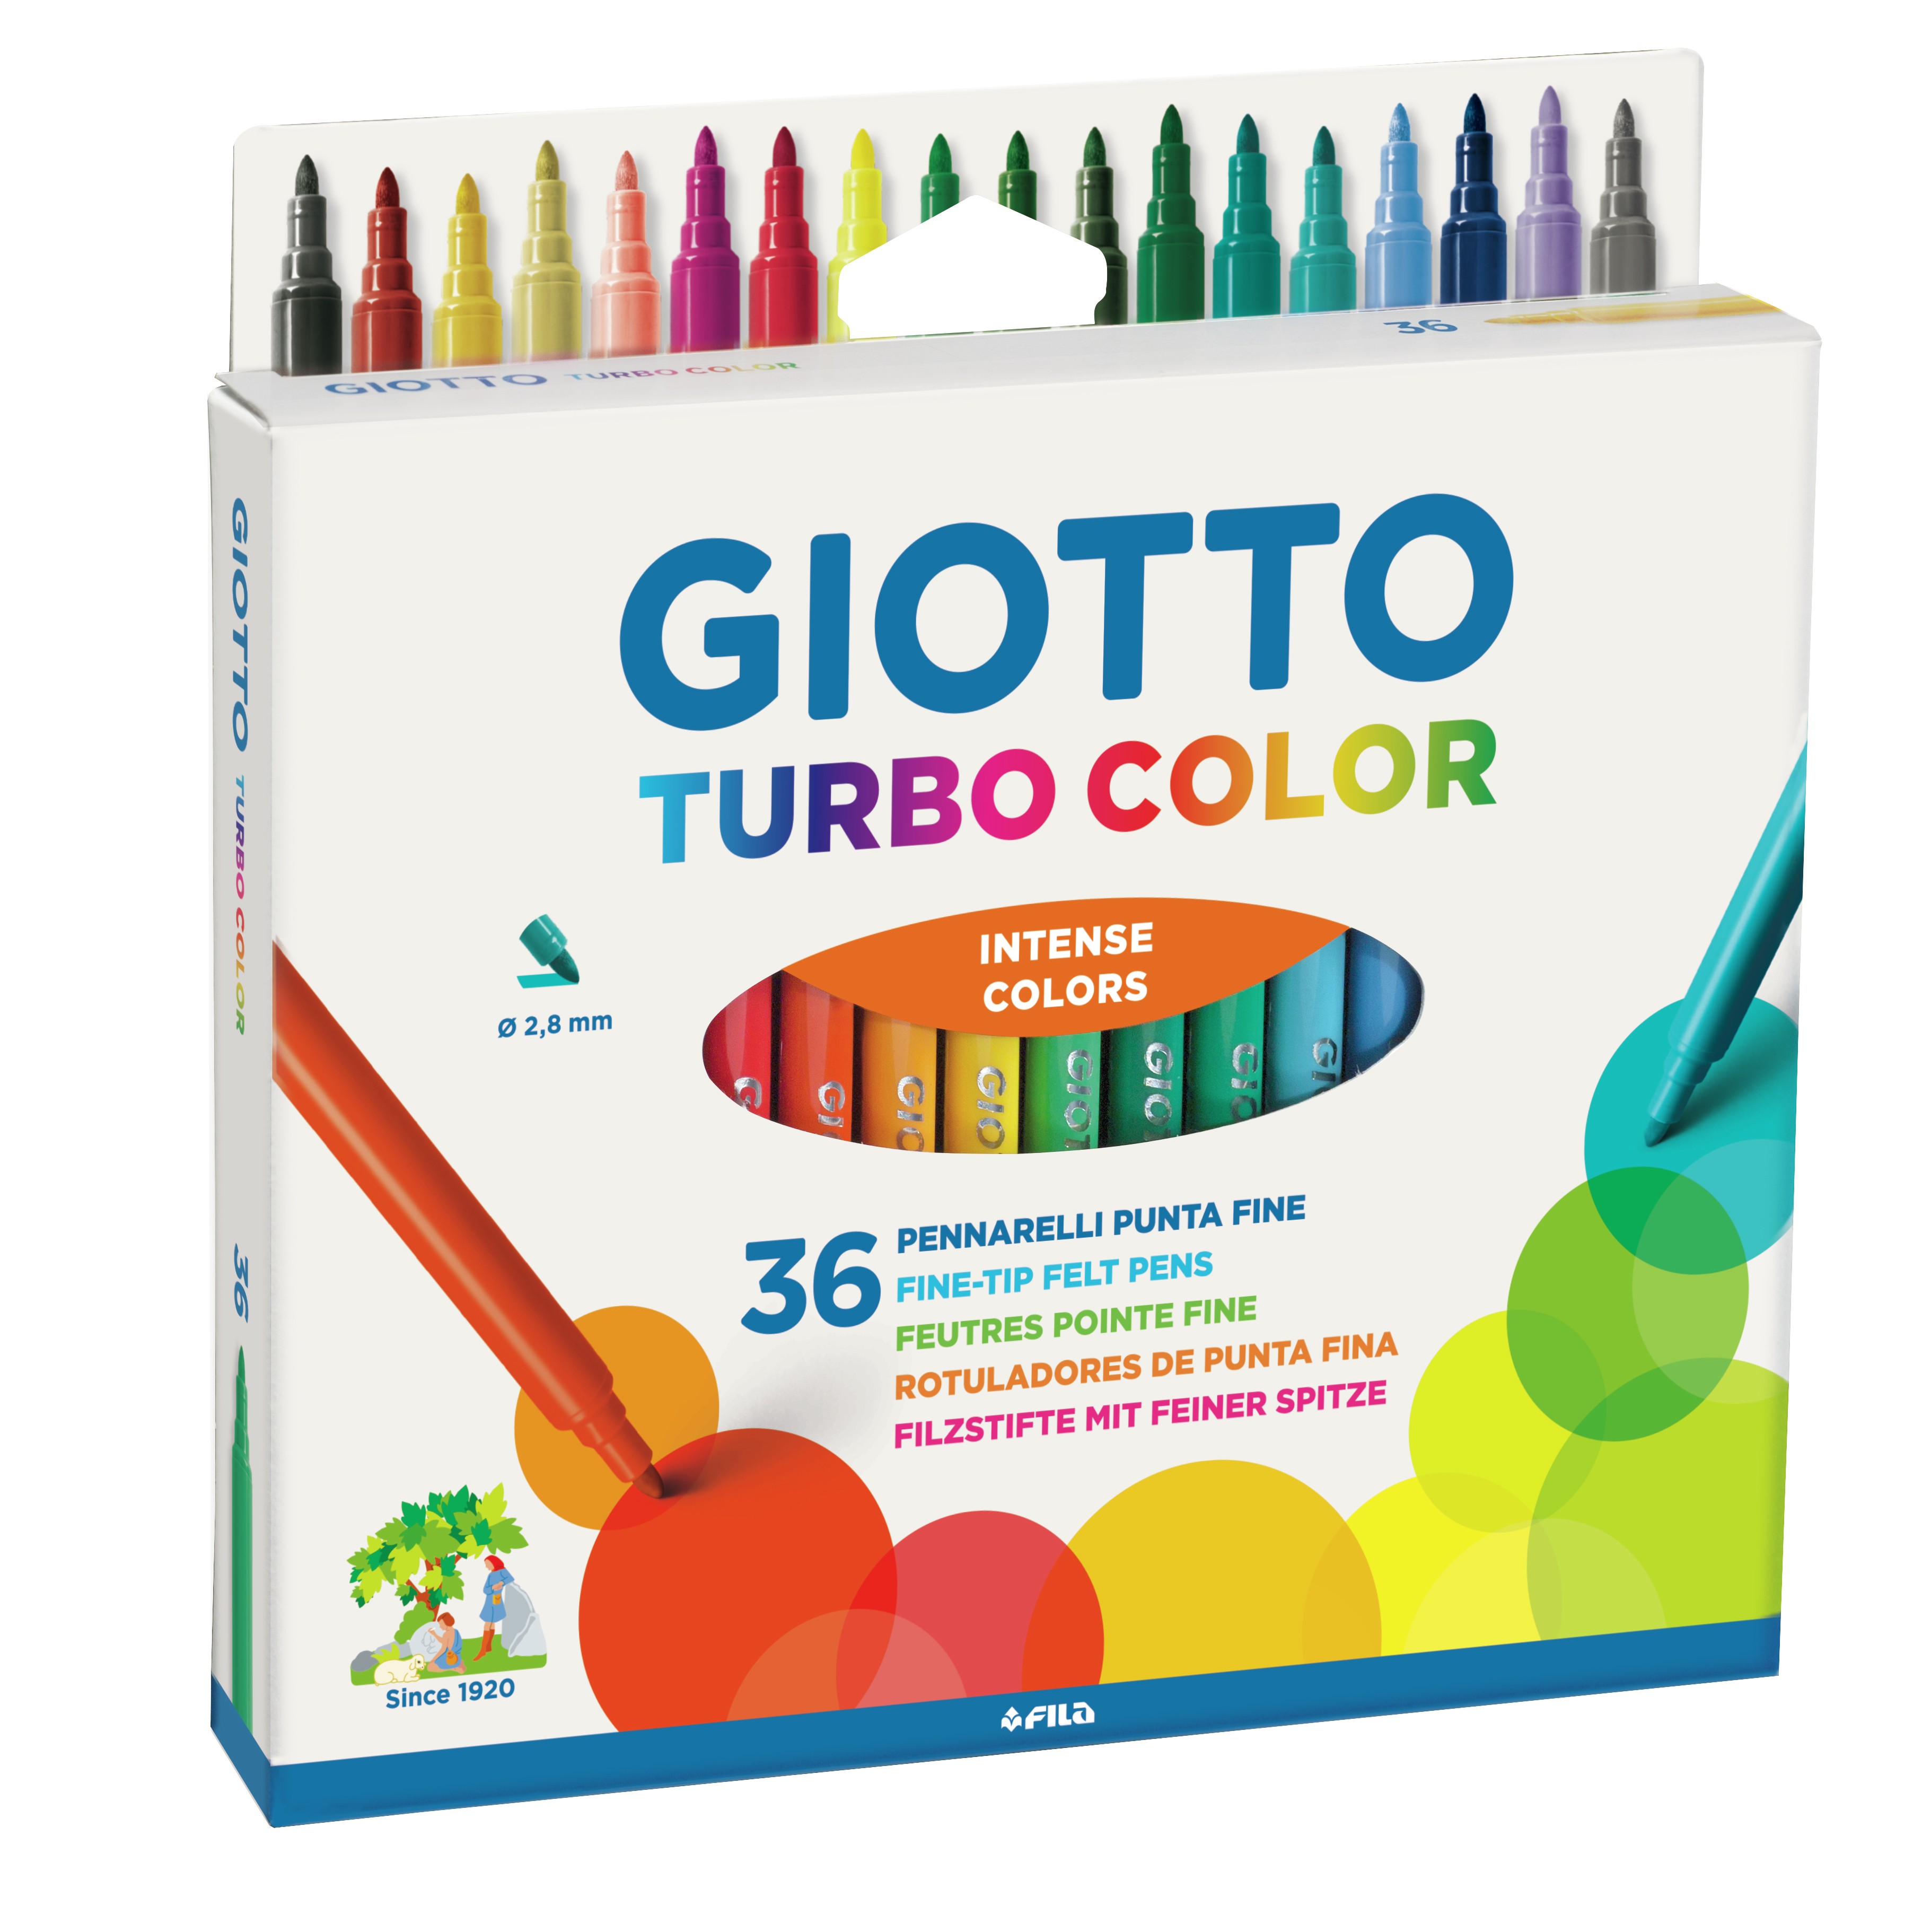 Giotto Astuccio 36 pennarelli turbo color - Evidenziatori